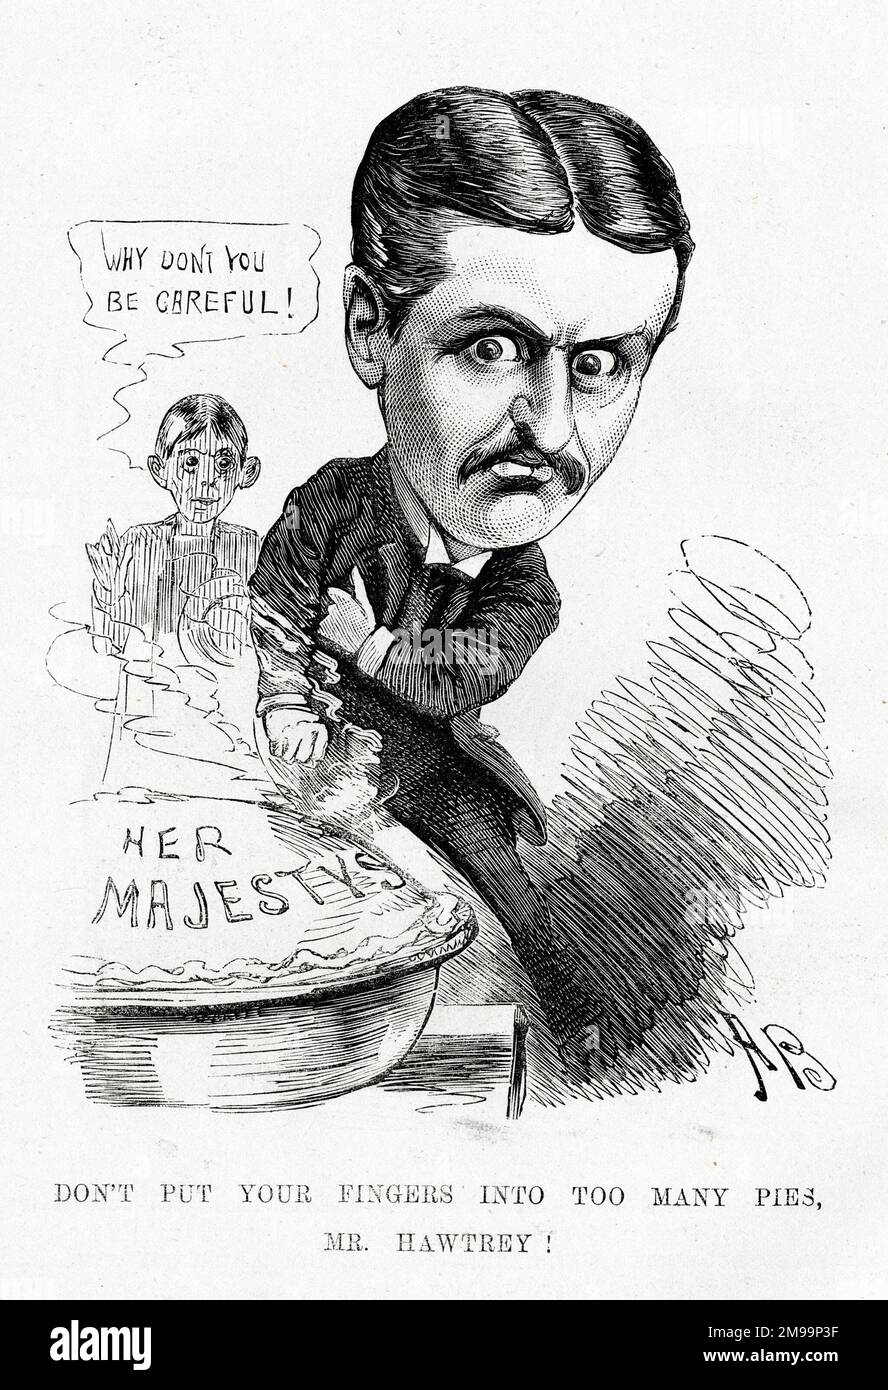 Caricatura, Charles Hawtrey (1858-1923), actor, director, productor y gerente inglés: ¡No ponga los dedos en demasiados pasteles, señor Hawtrey! Foto de stock